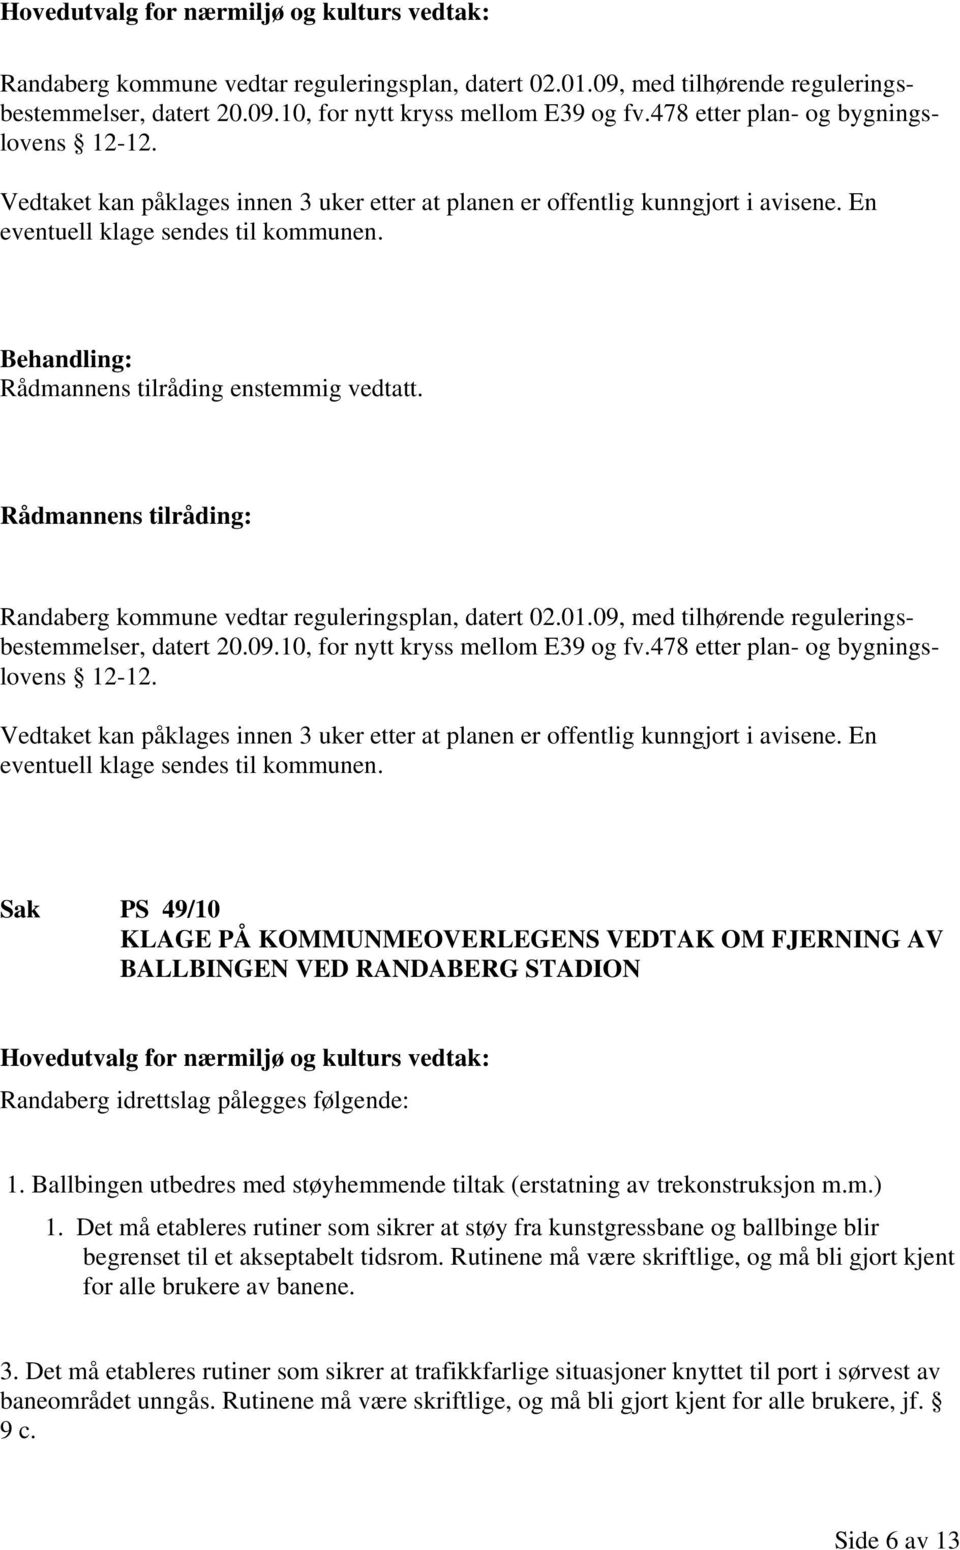 Rådmannens tilråding enstemmig vedtatt. Randaberg kommune vedtar reguleringsplan, datert 02.01.09, med tilhørende reguleringsbestemmelser, datert 20.09.10, for nytt kryss mellom E39 og fv.